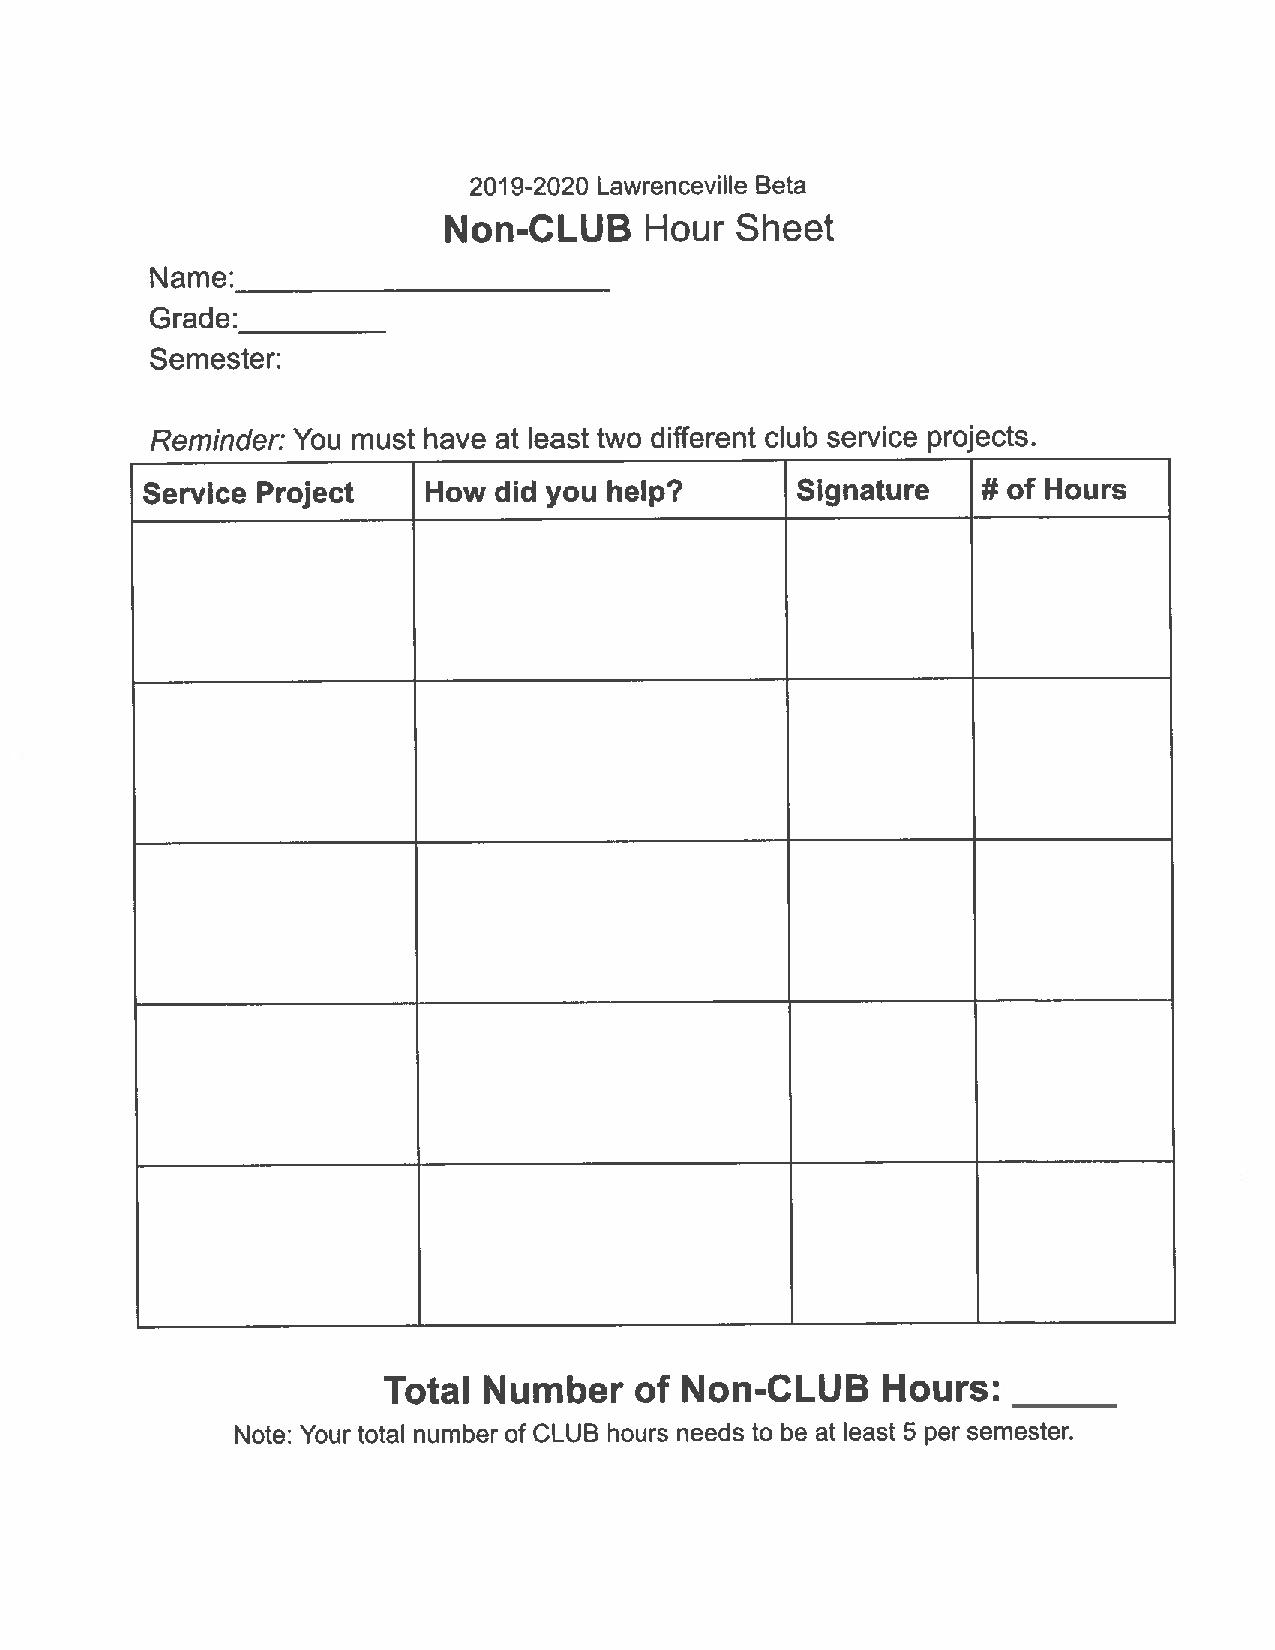 Non-Club Hour Sheet